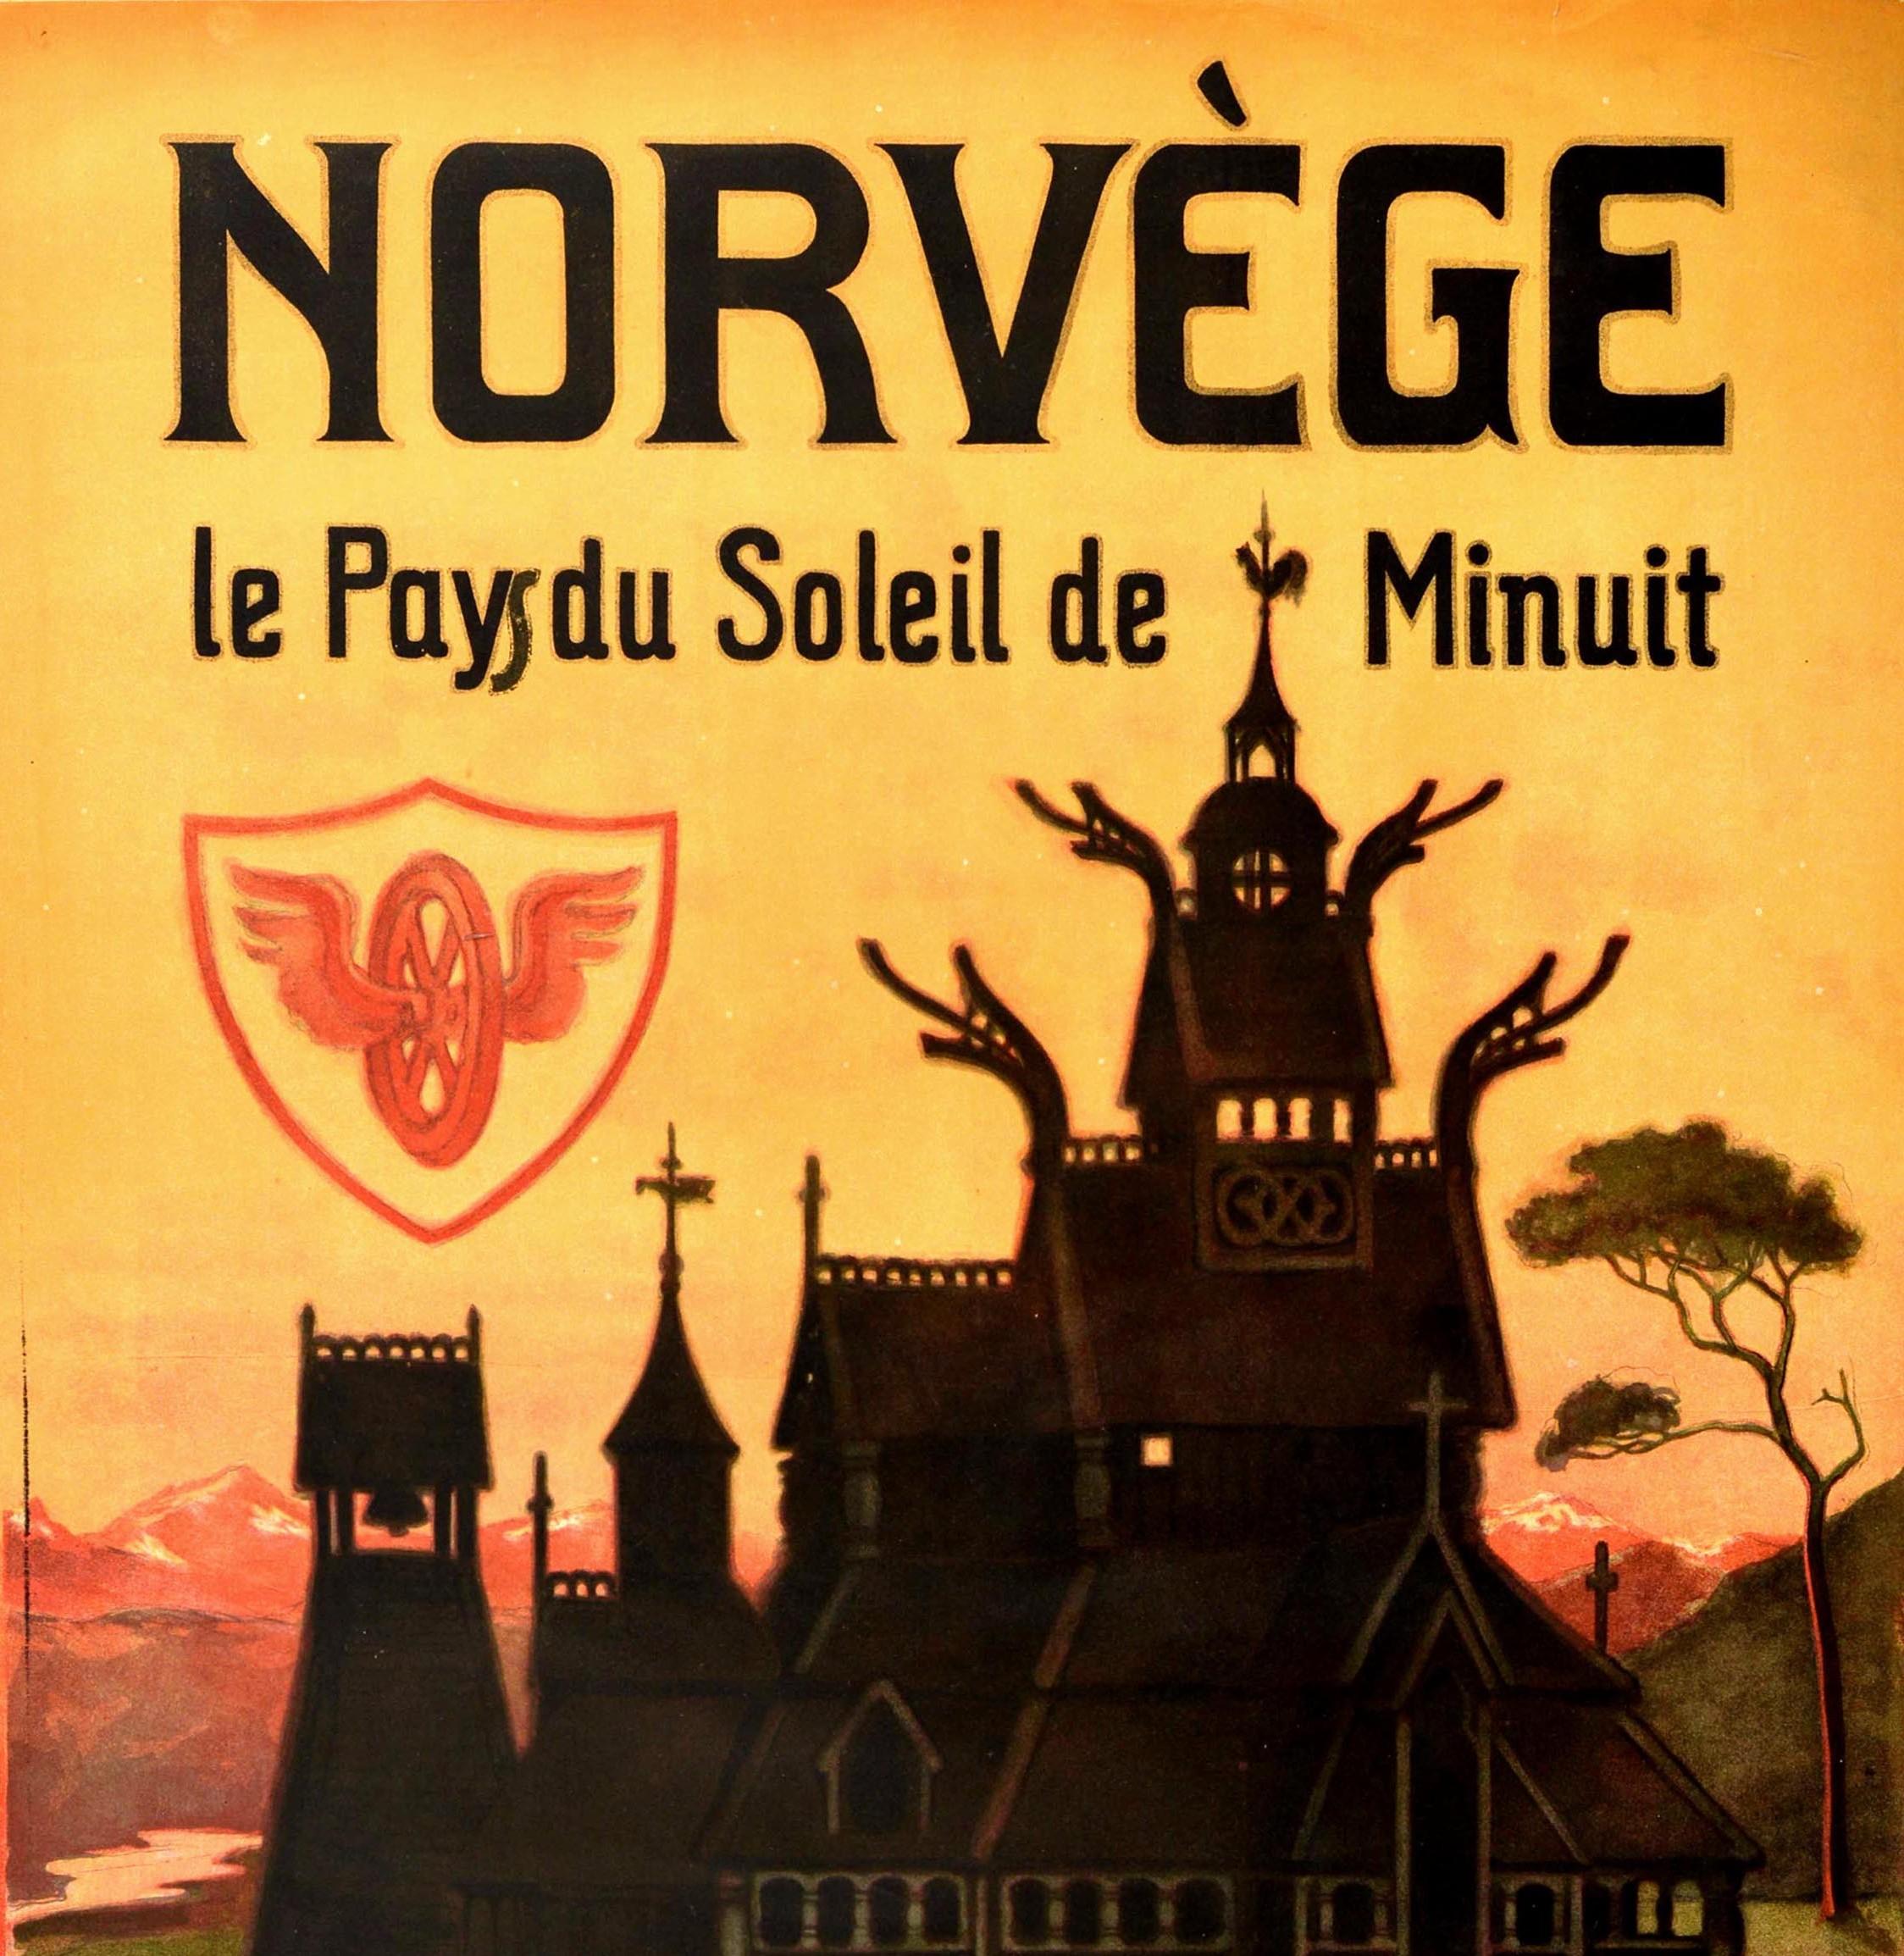 Originales antikes Reiseplakat für Norwegen mit französischem Text Das Land der Mitternachtssonne / Norvege le Pays du Soleil de Minuit mit einem großartigen Kunstwerk von Othar Holmboe (1868-1928), das eine traditionelle norwegische